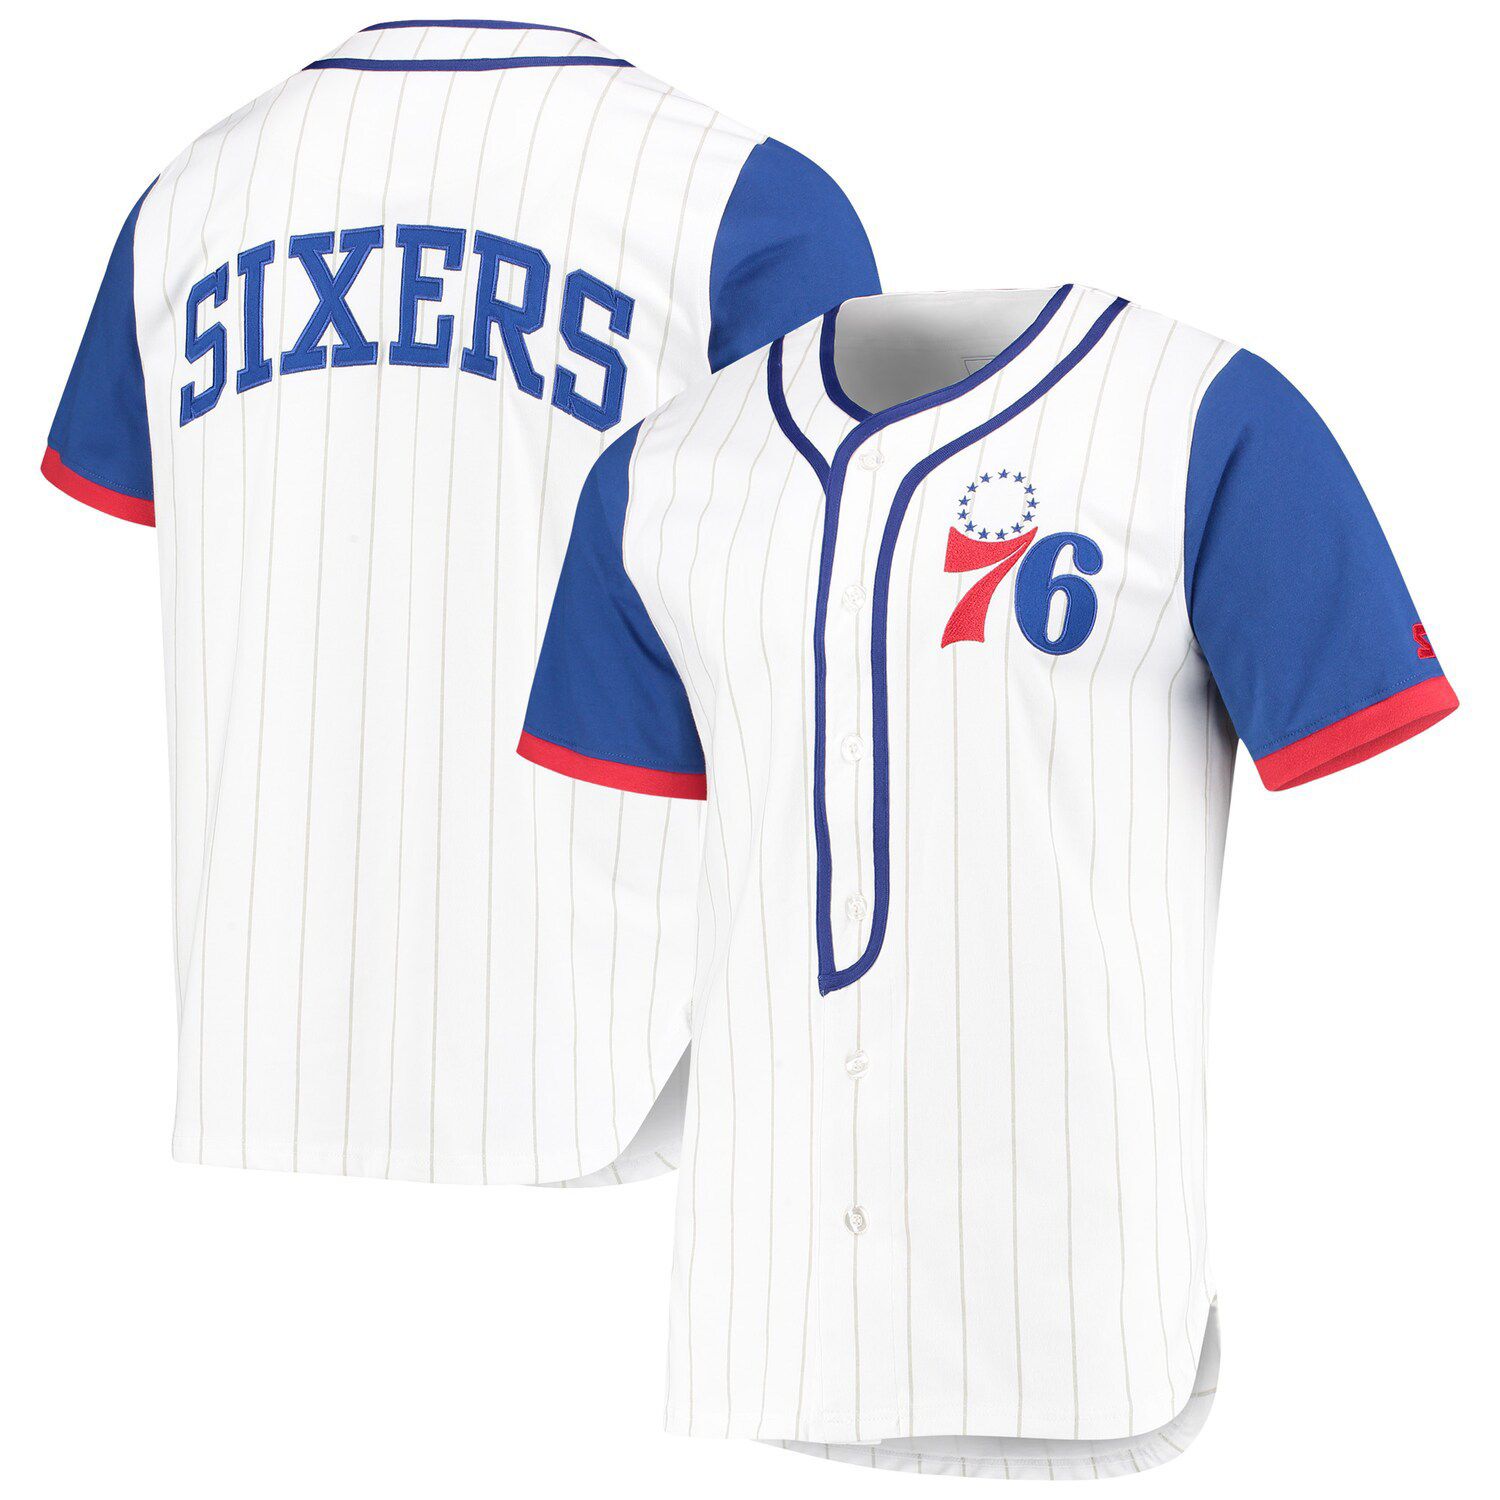 sixers baseball jersey